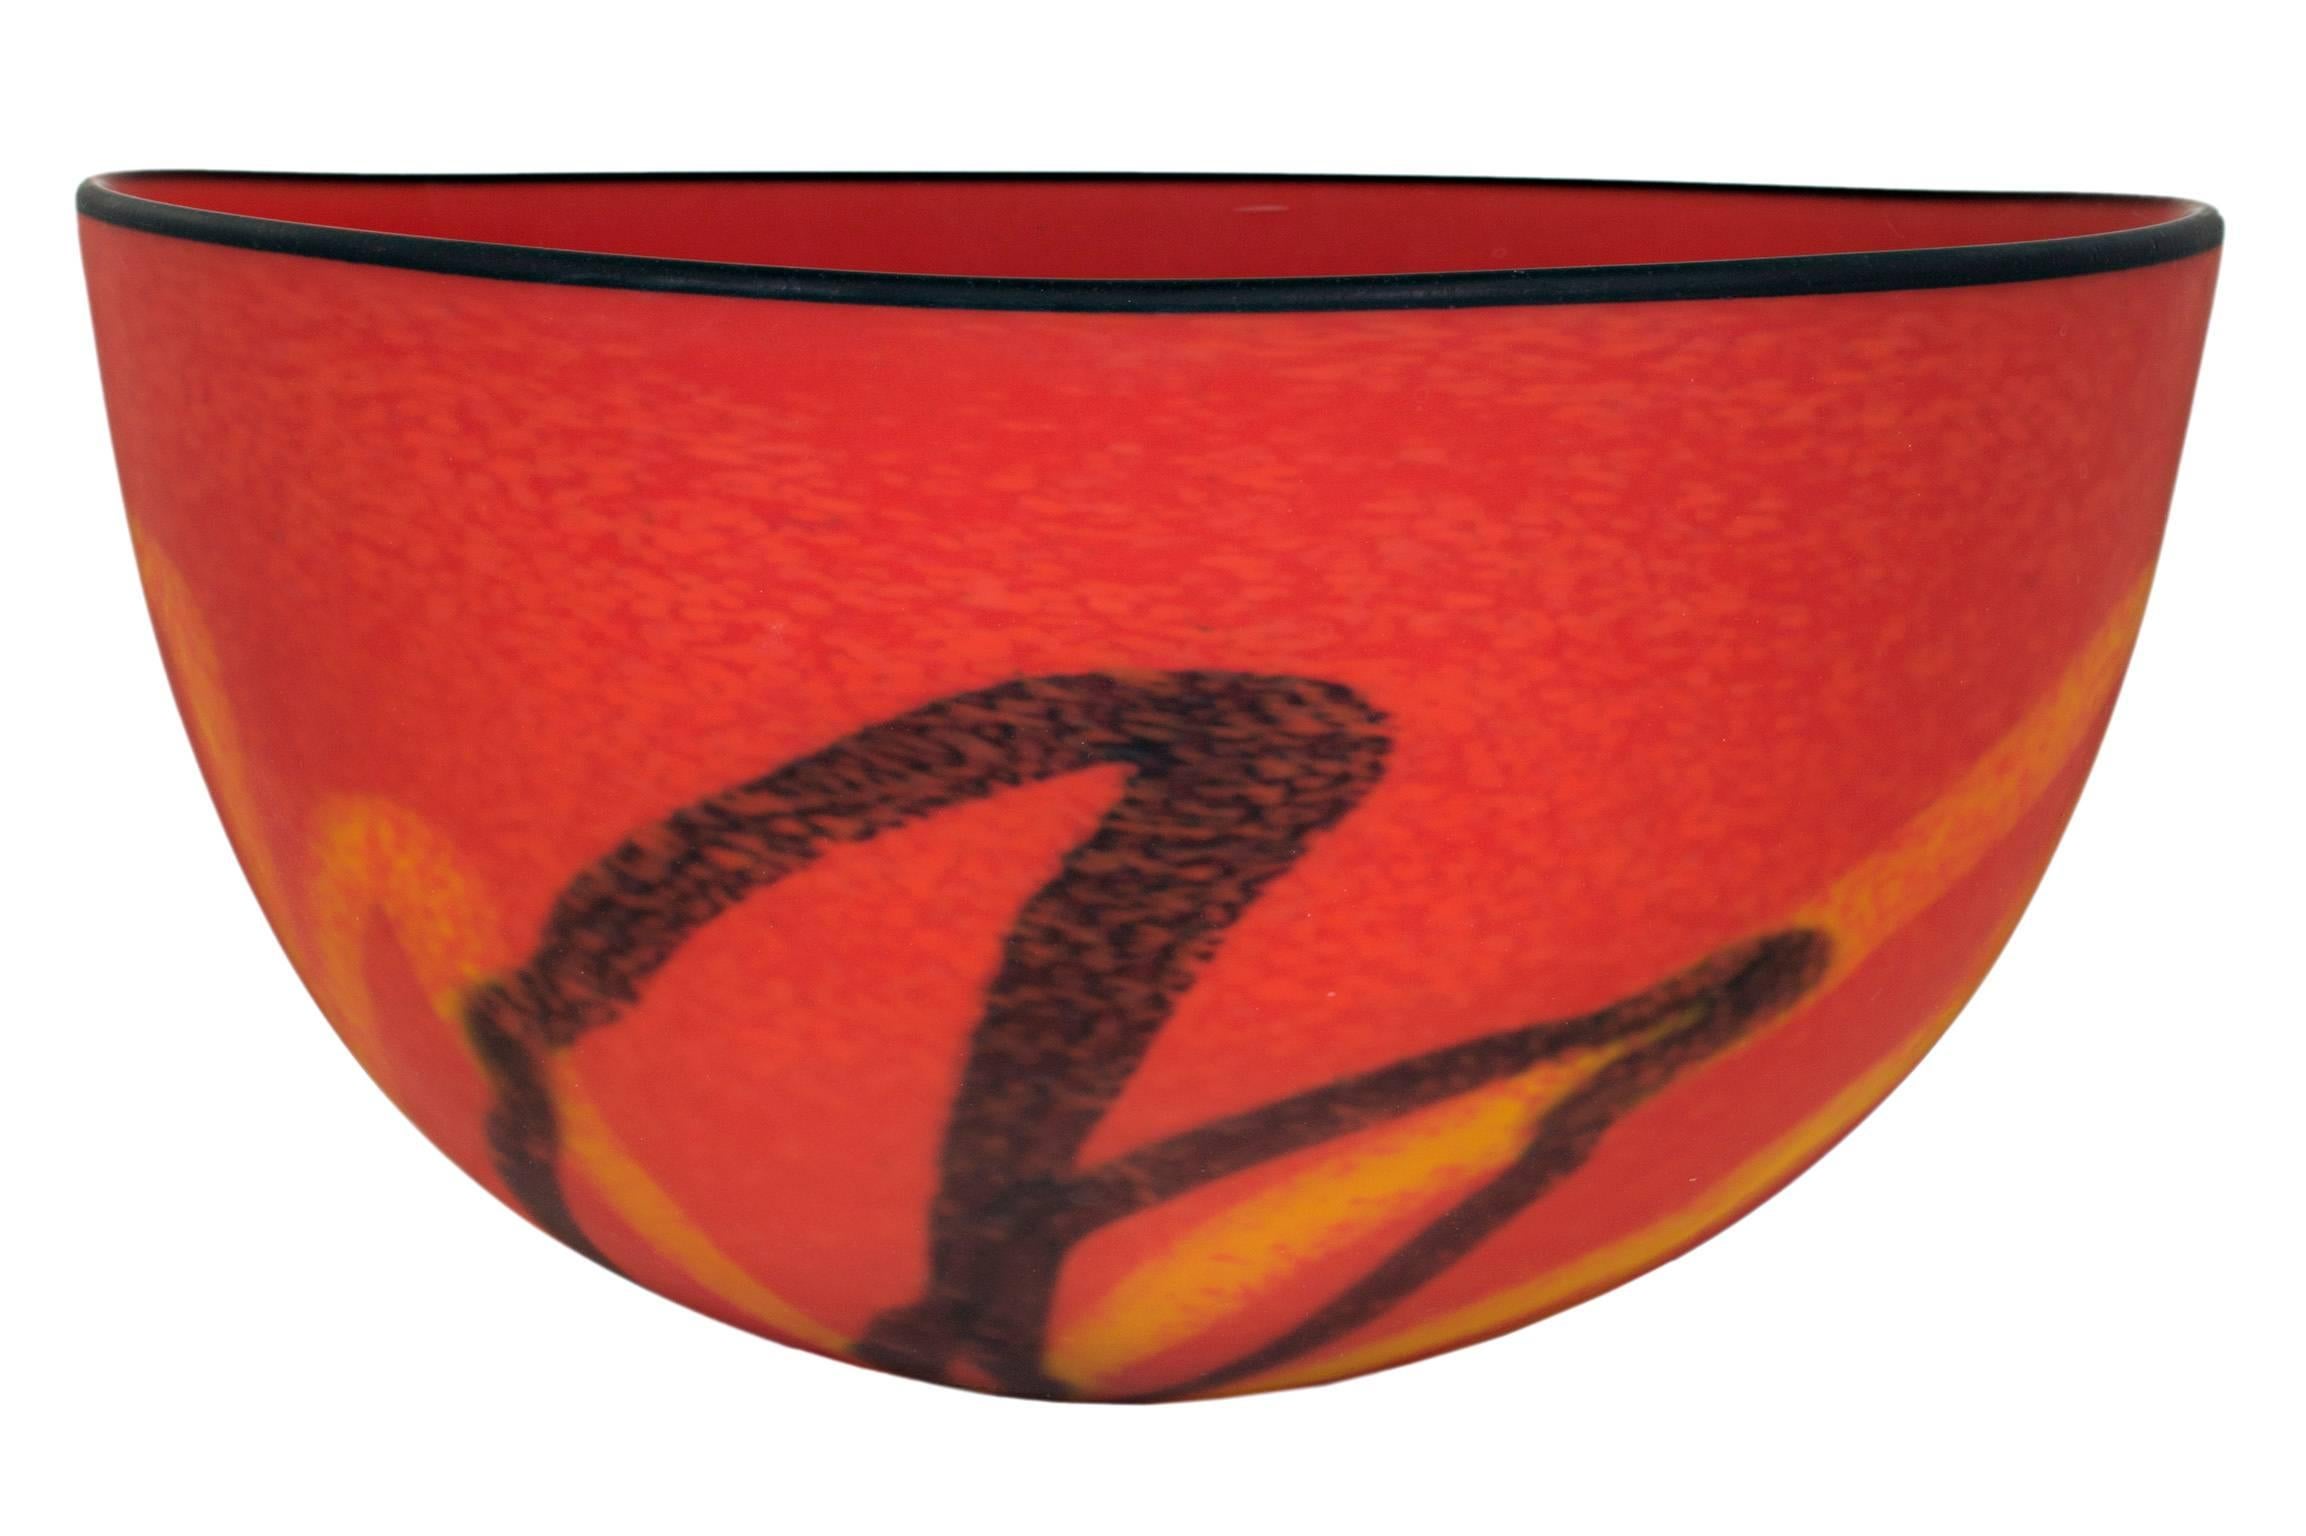 "Red Matte Bowl" est un bol en verre soufflé à la bouche par Ioan Nemtoi. Il présente un motif abstrait de lignes noires et jaunes sur un fond rouge vif. Le bord du bol est noir. L'artiste a gravé sa signature dans la base de la pièce.

12" de